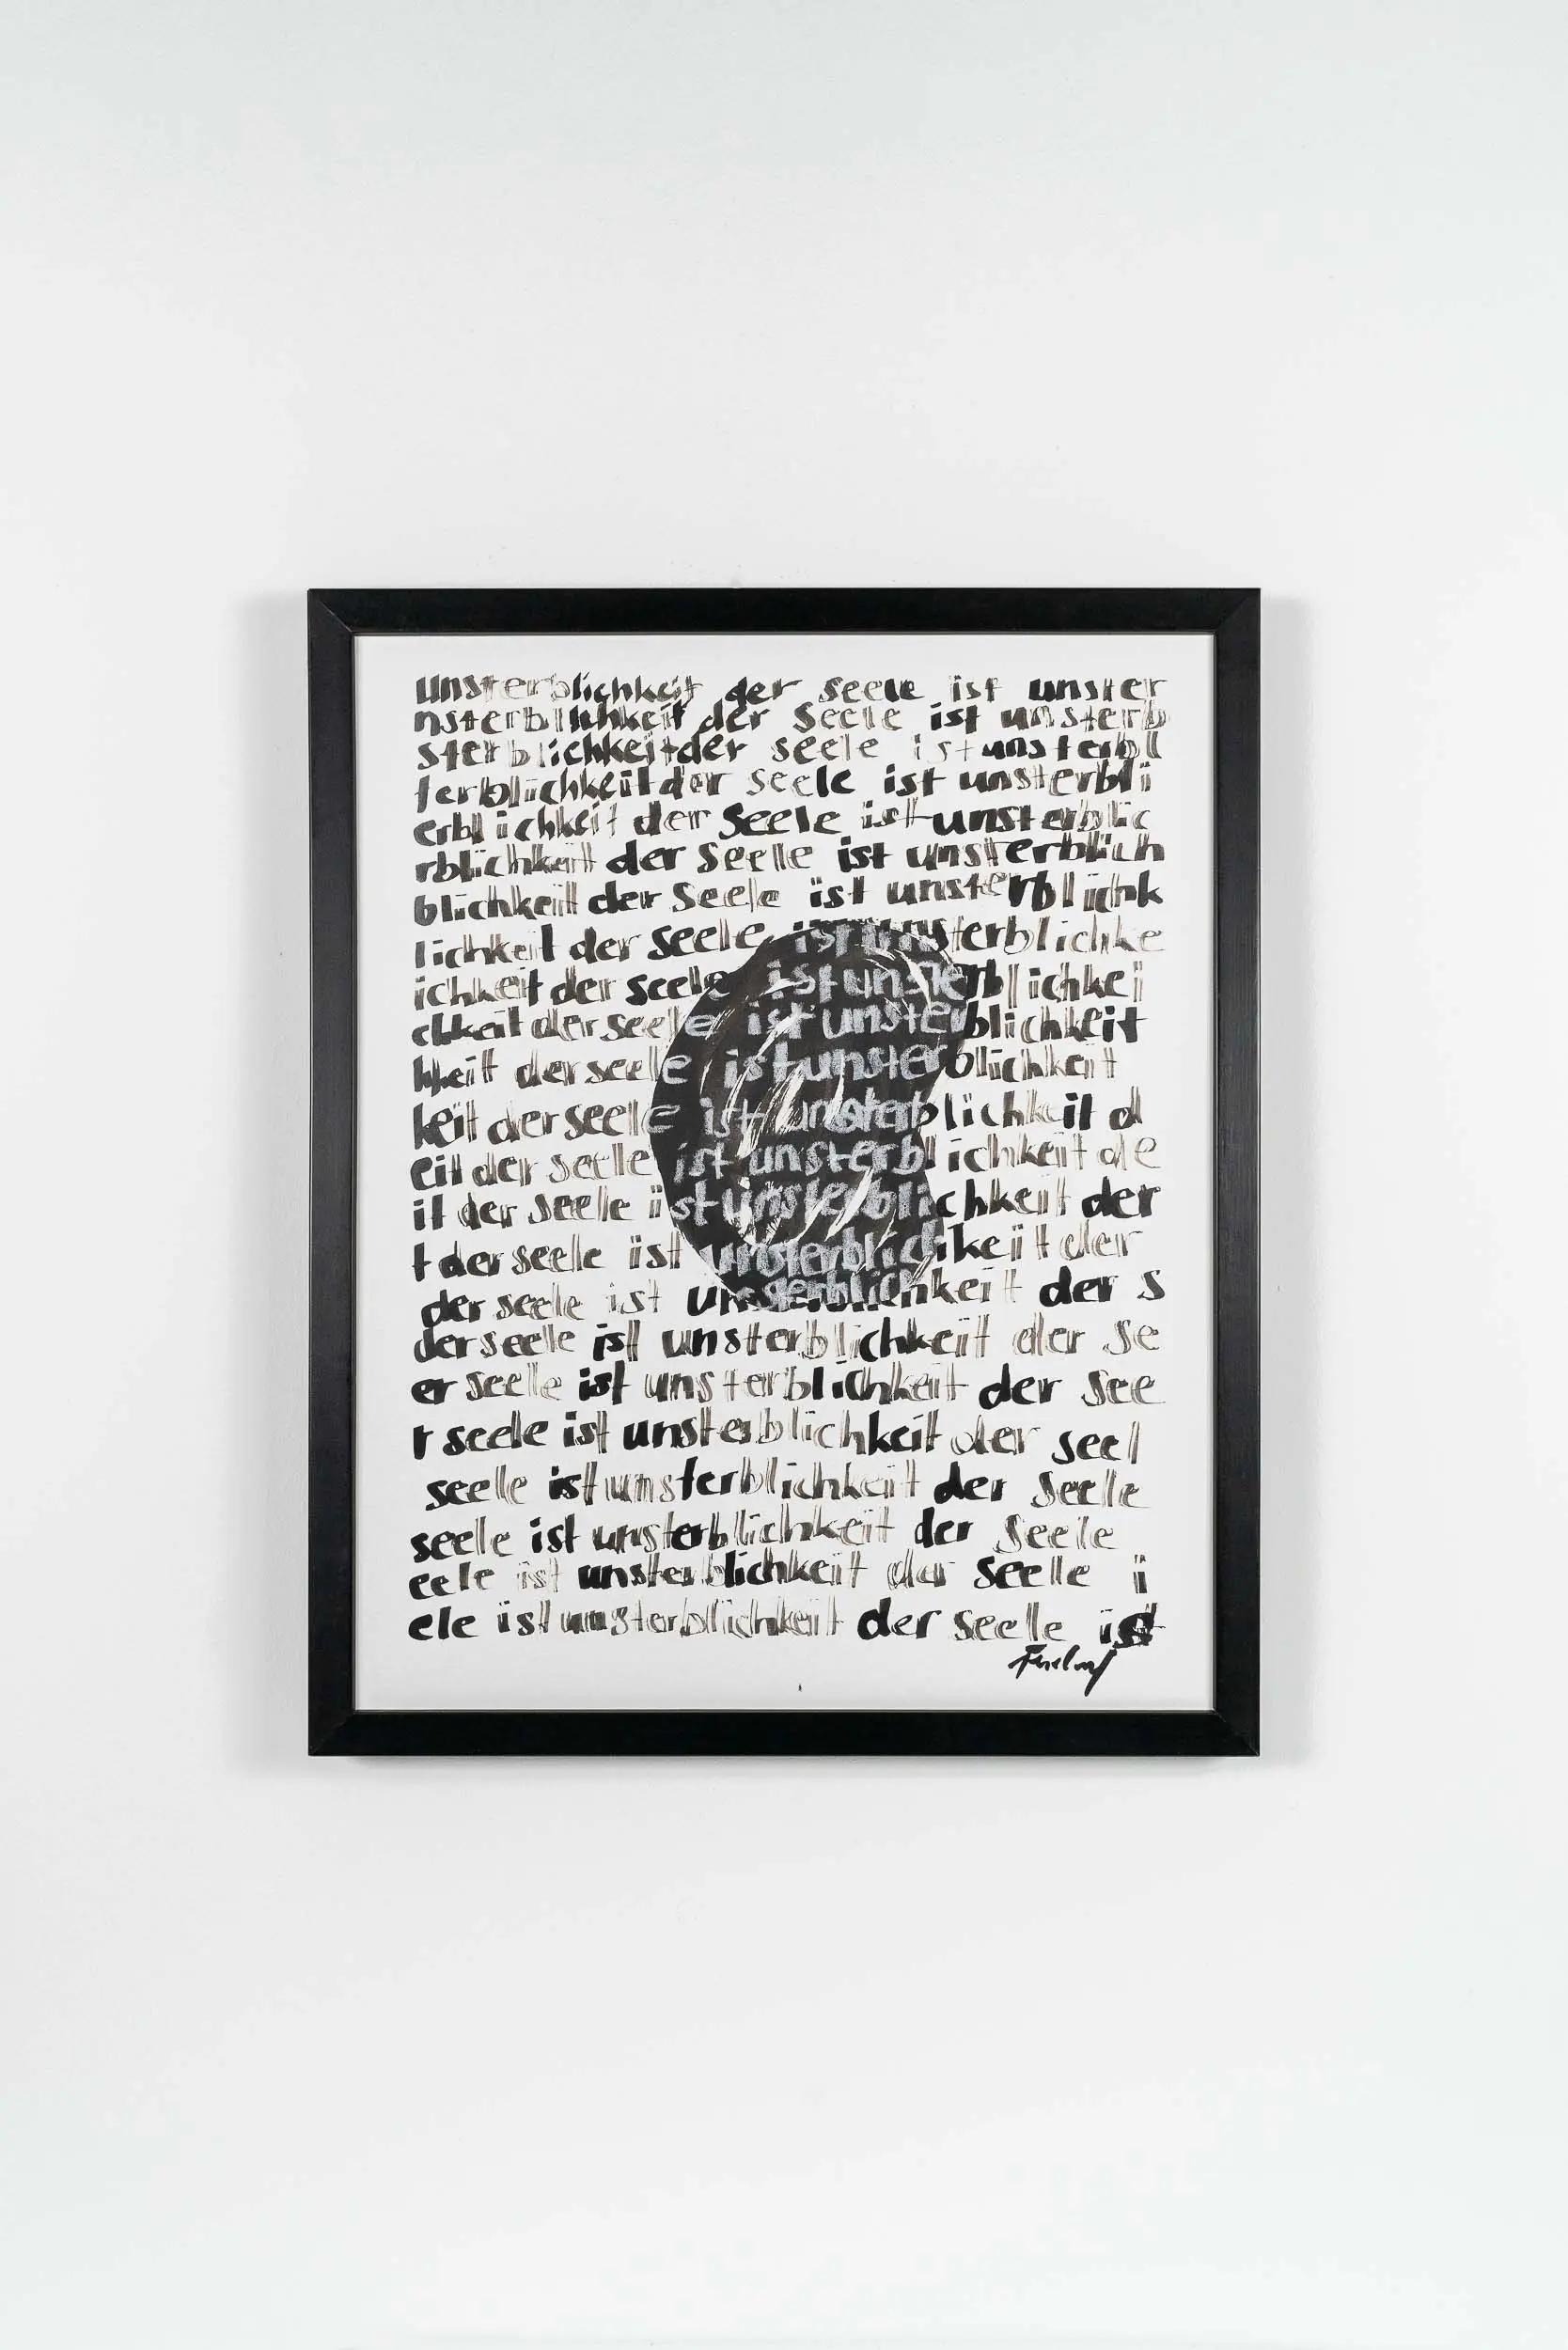 SiL05 Unsterblichkeit 40 × 50 cm Tusche / Papier / Text 2013 2 Wiederholung 